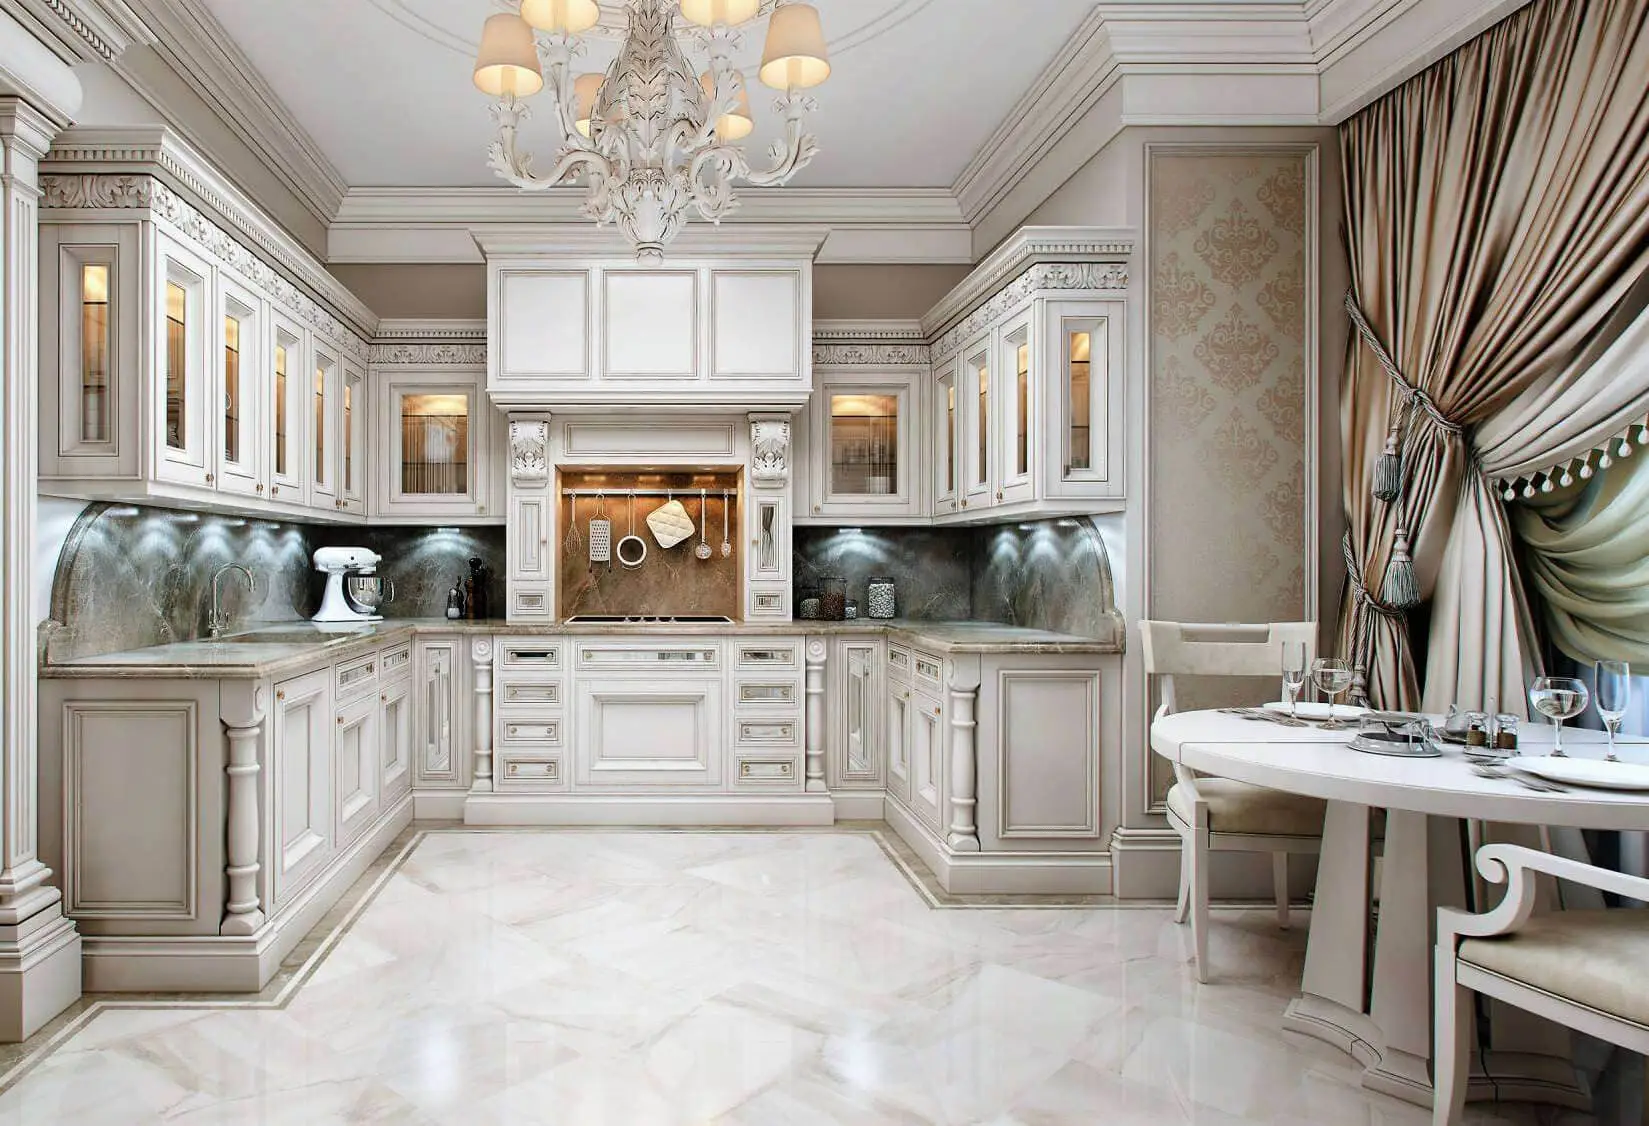 Thiết kế nội thất phòng bếp theo phong cách Scandinavian